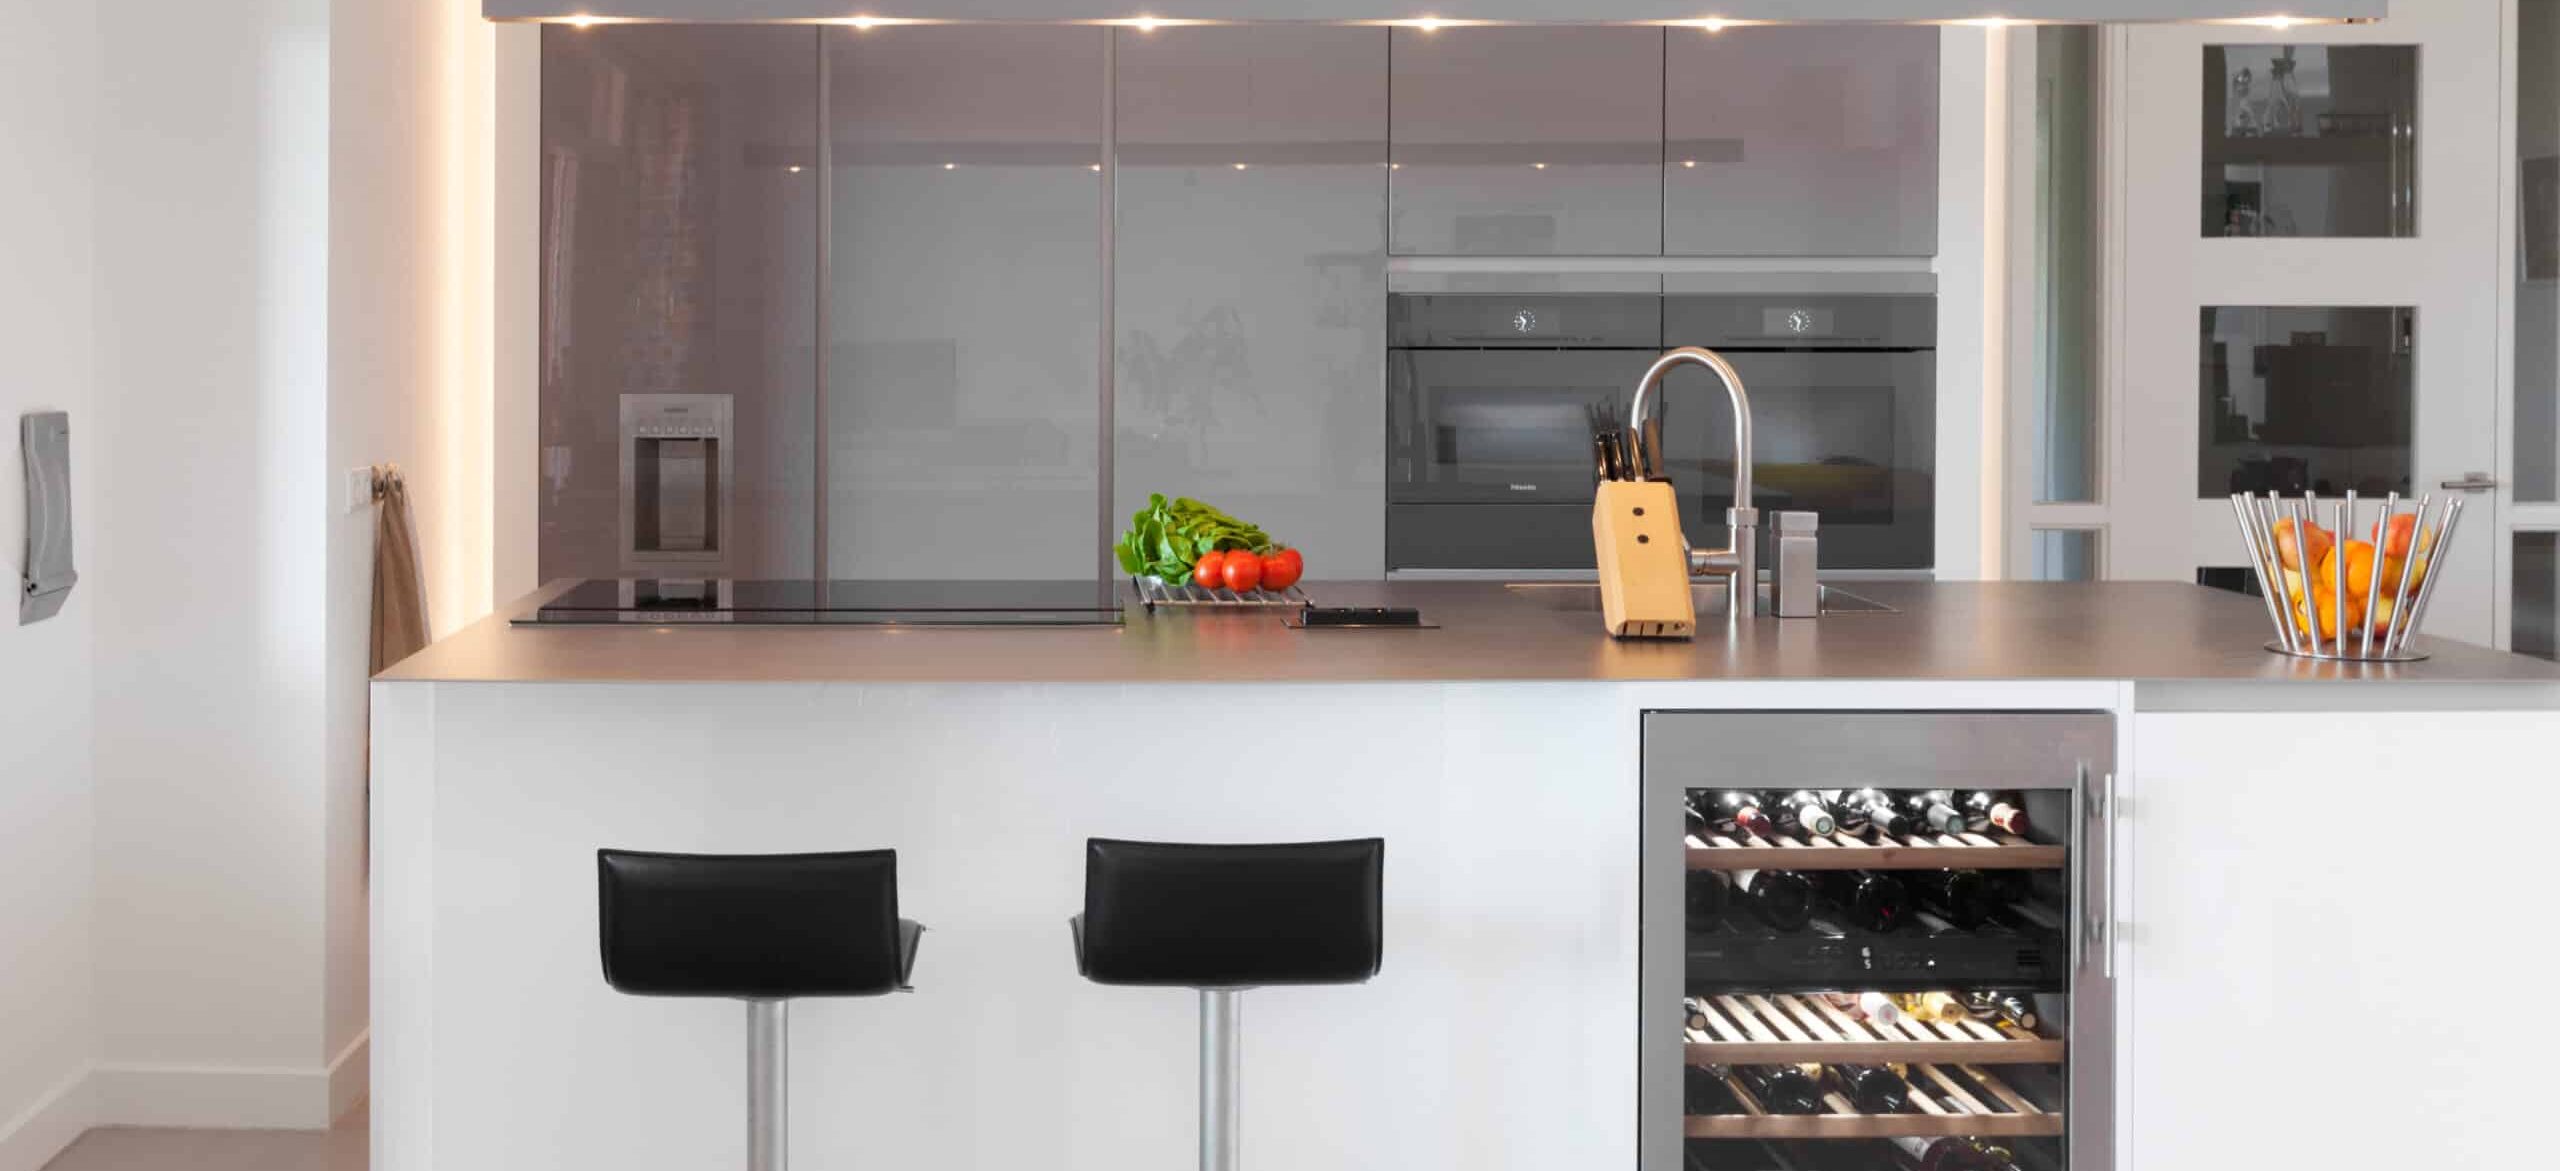 Keukentrend: minimalistische keukens met een warm sausje